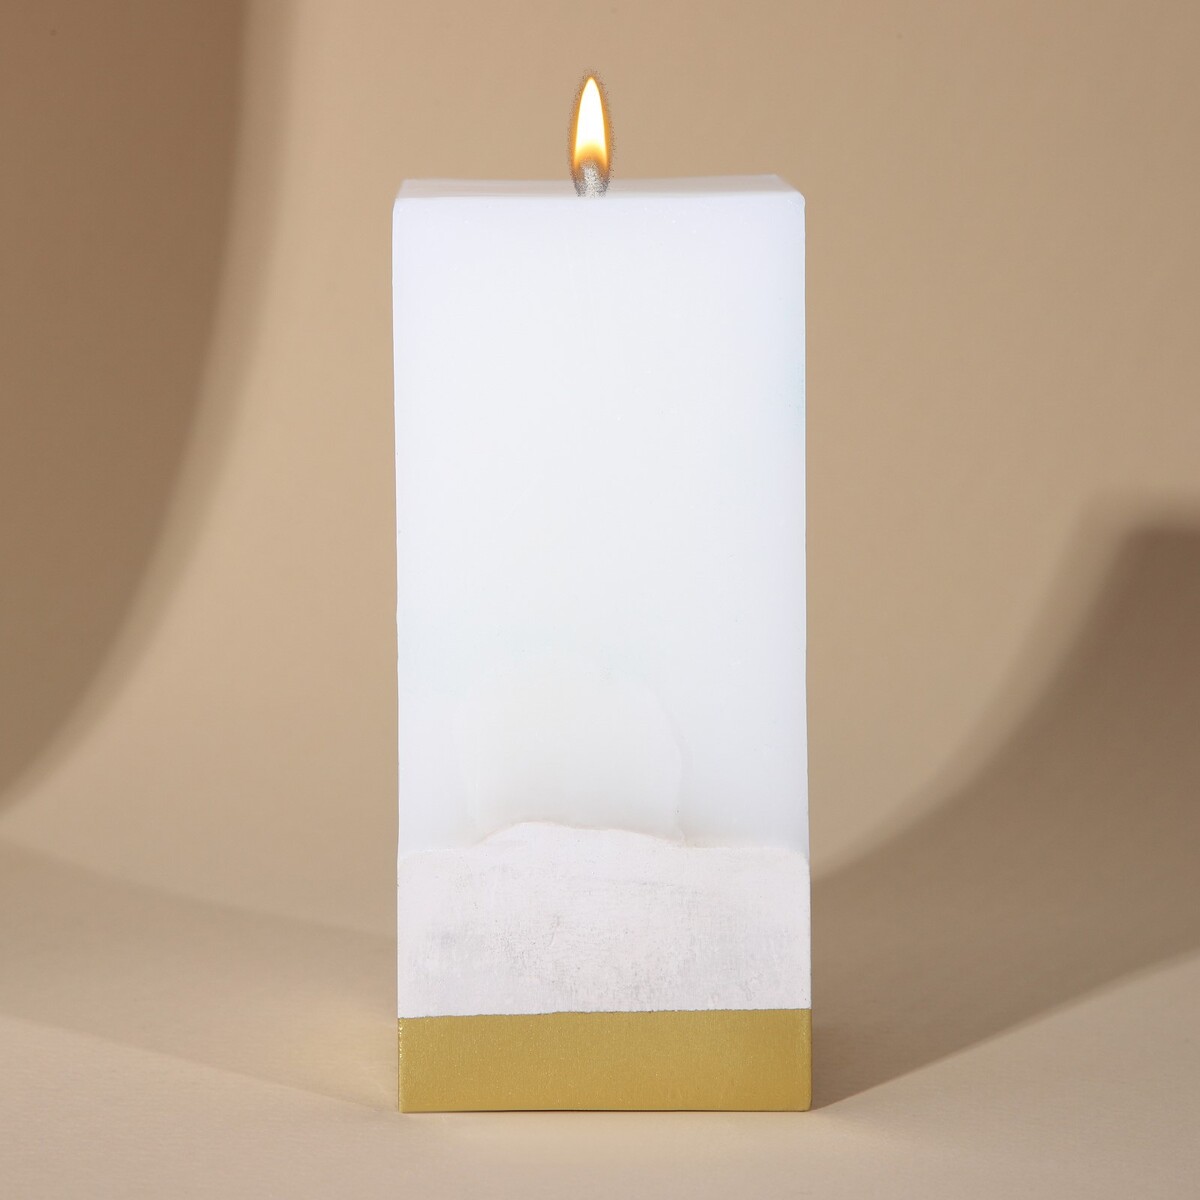 Свеча интерьерная белая с бетоном, низ золото, 6 х 6 х 14 см свеча из вощины 4 5х4 5х12 5 см золото металлик